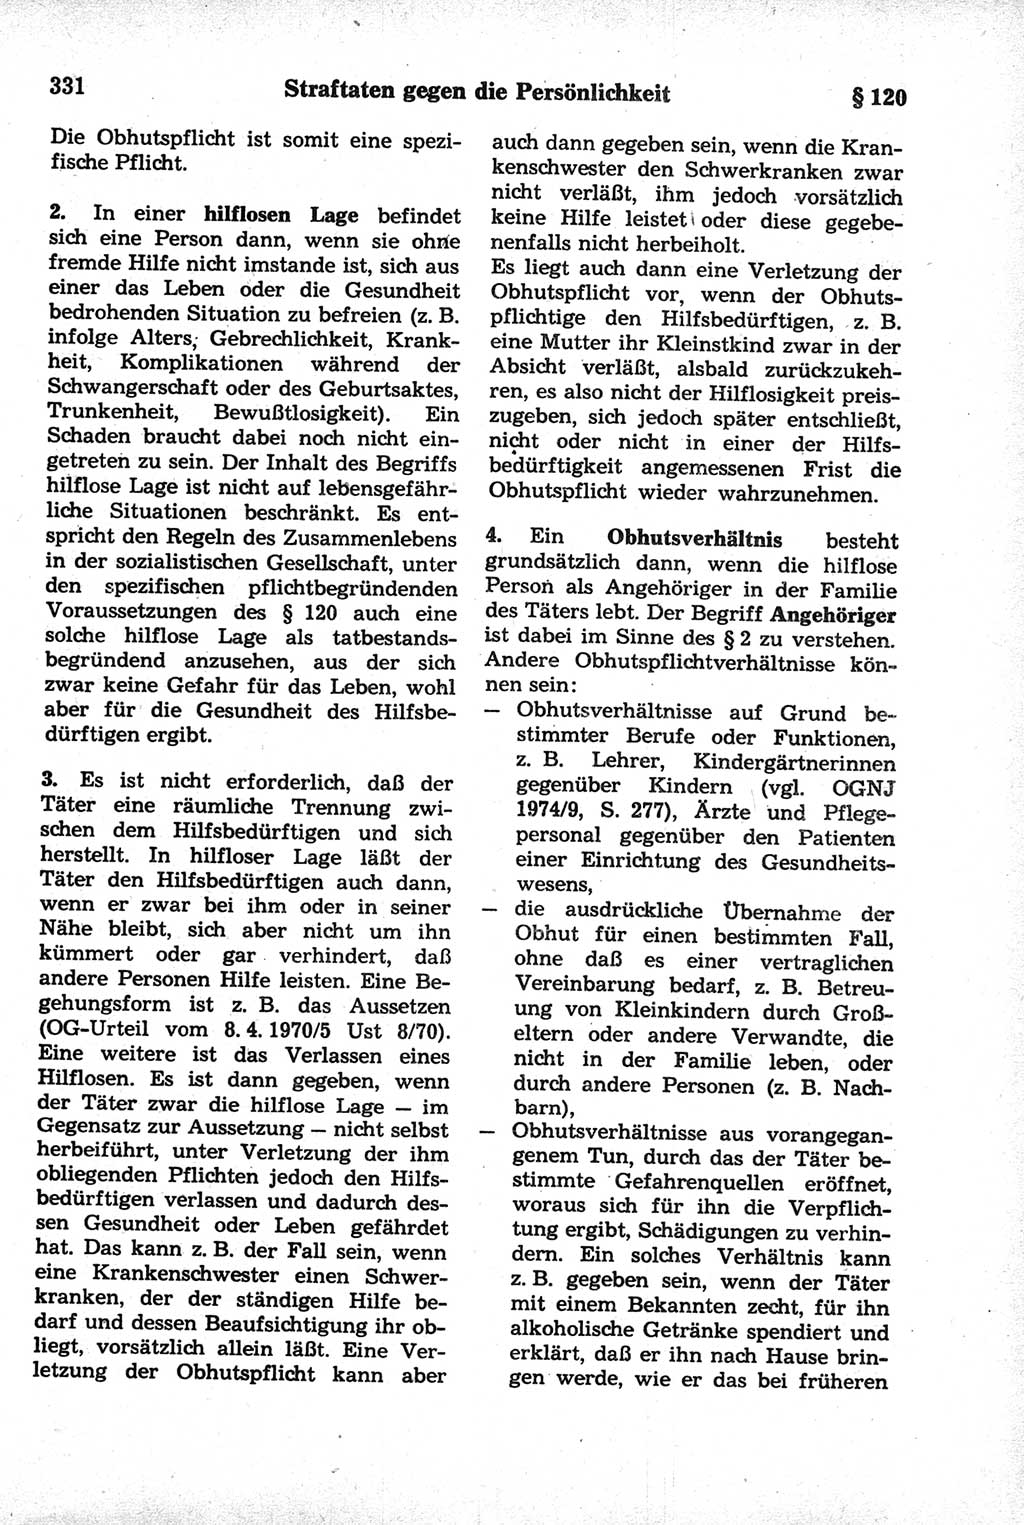 Strafrecht der Deutschen Demokratischen Republik (DDR), Kommentar zum Strafgesetzbuch (StGB) 1981, Seite 331 (Strafr. DDR Komm. StGB 1981, S. 331)